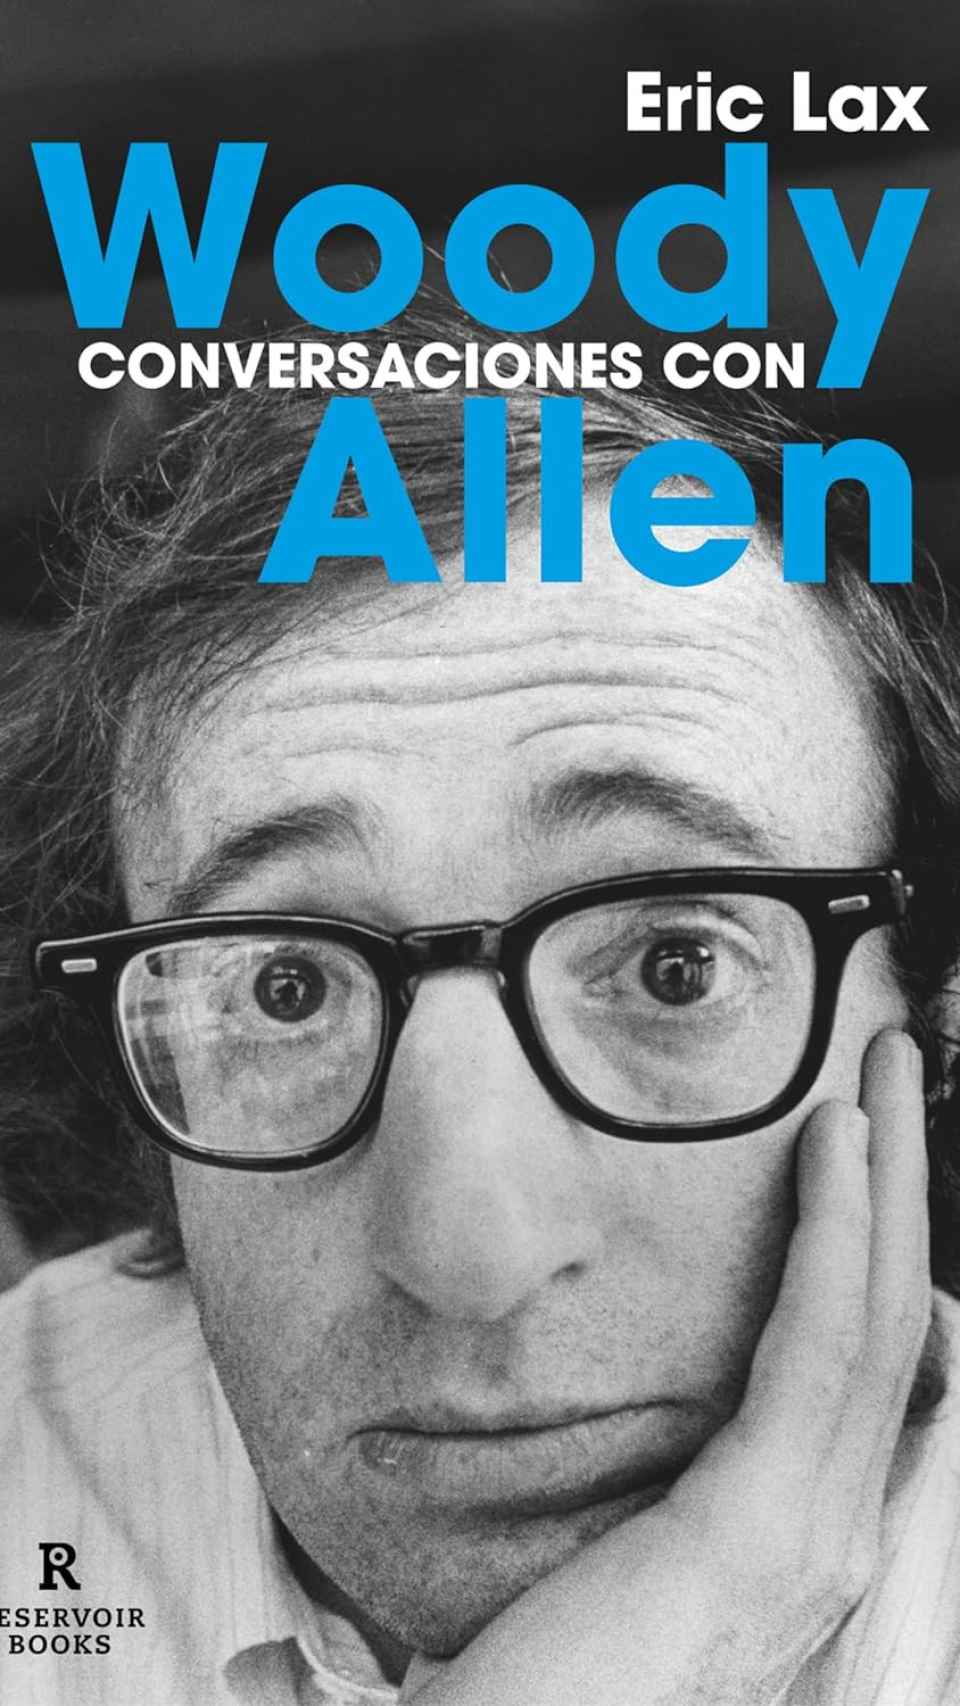 Conversaciones con Woody Allen. Eric Lax.